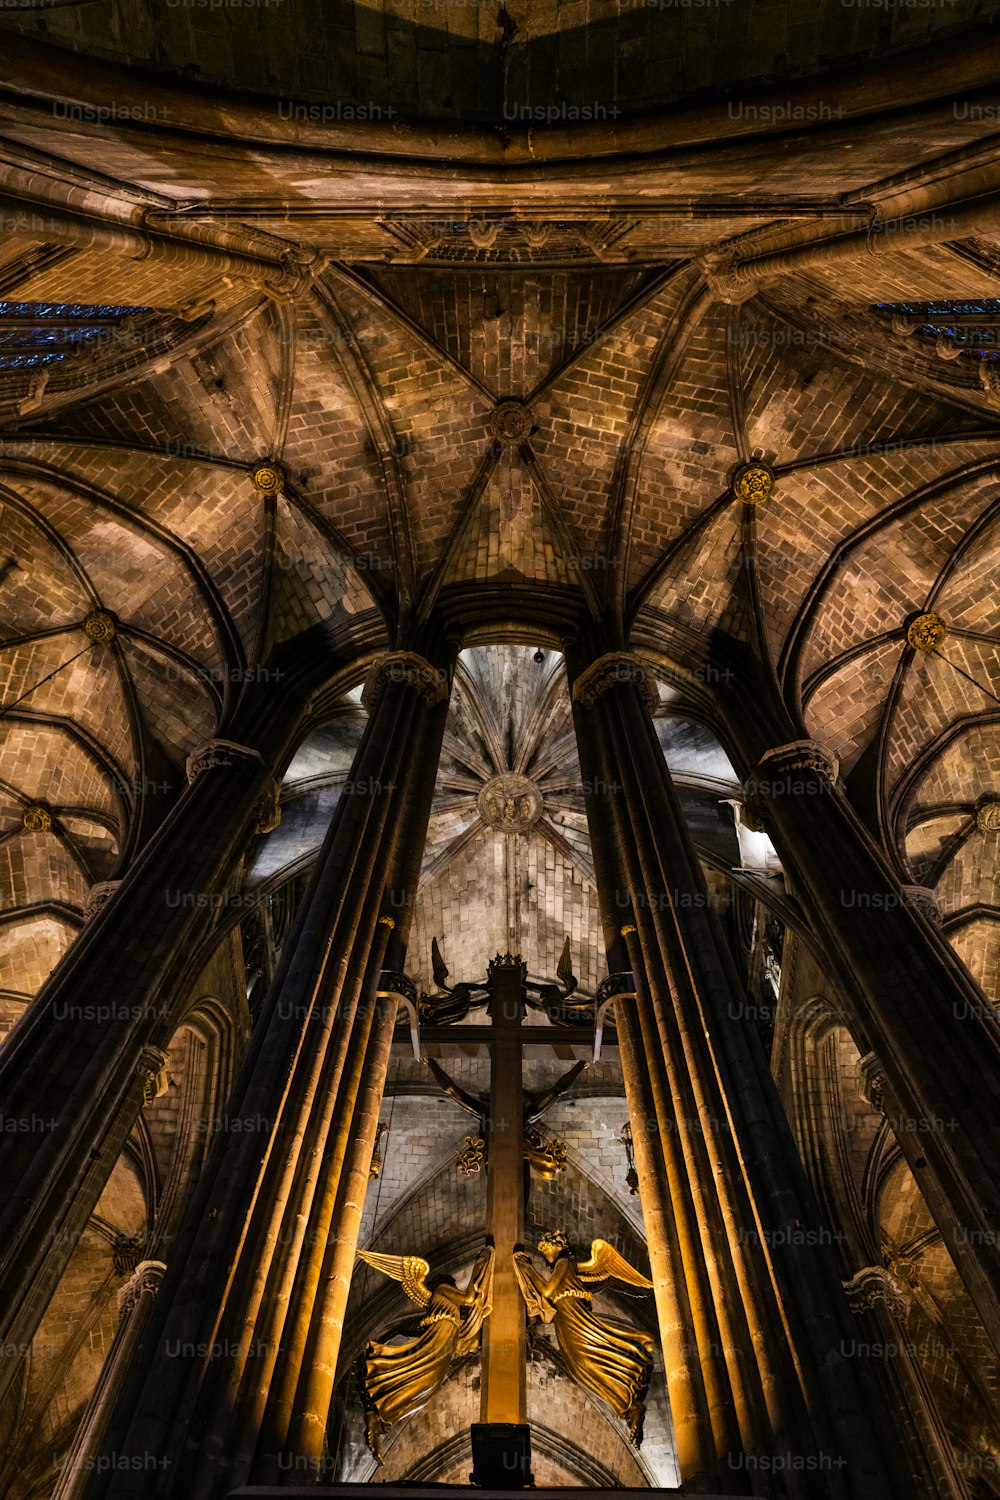 Vista interna della Cattedrale gotica di Barcellona, nota anche come La Seu, situata nel cuore del Quartiere Gotico di Barcellona.